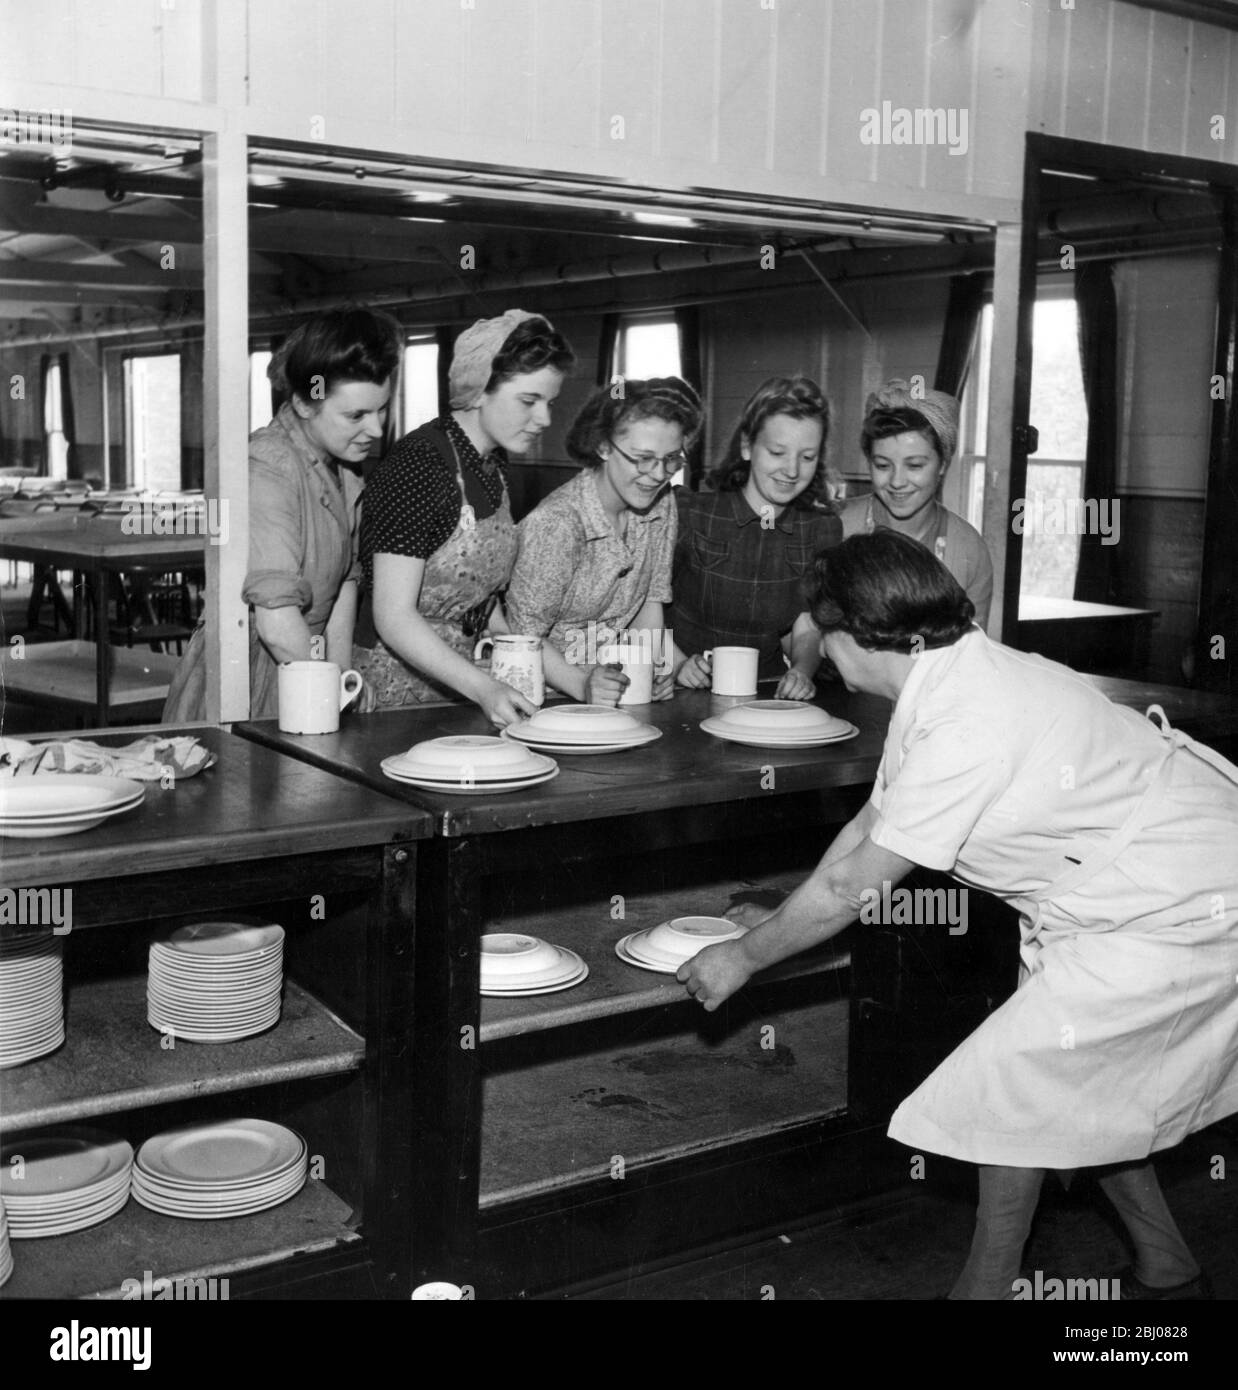 Le ragazze che hanno portato le proprie cene per essere tenute calde nel forno fino a quando necessario sono servite alla mensa Ashton Brothers Cotton Mill, Hyde, Lancashire, Inghilterra. - 20 ottobre 1944 - Foto Stock